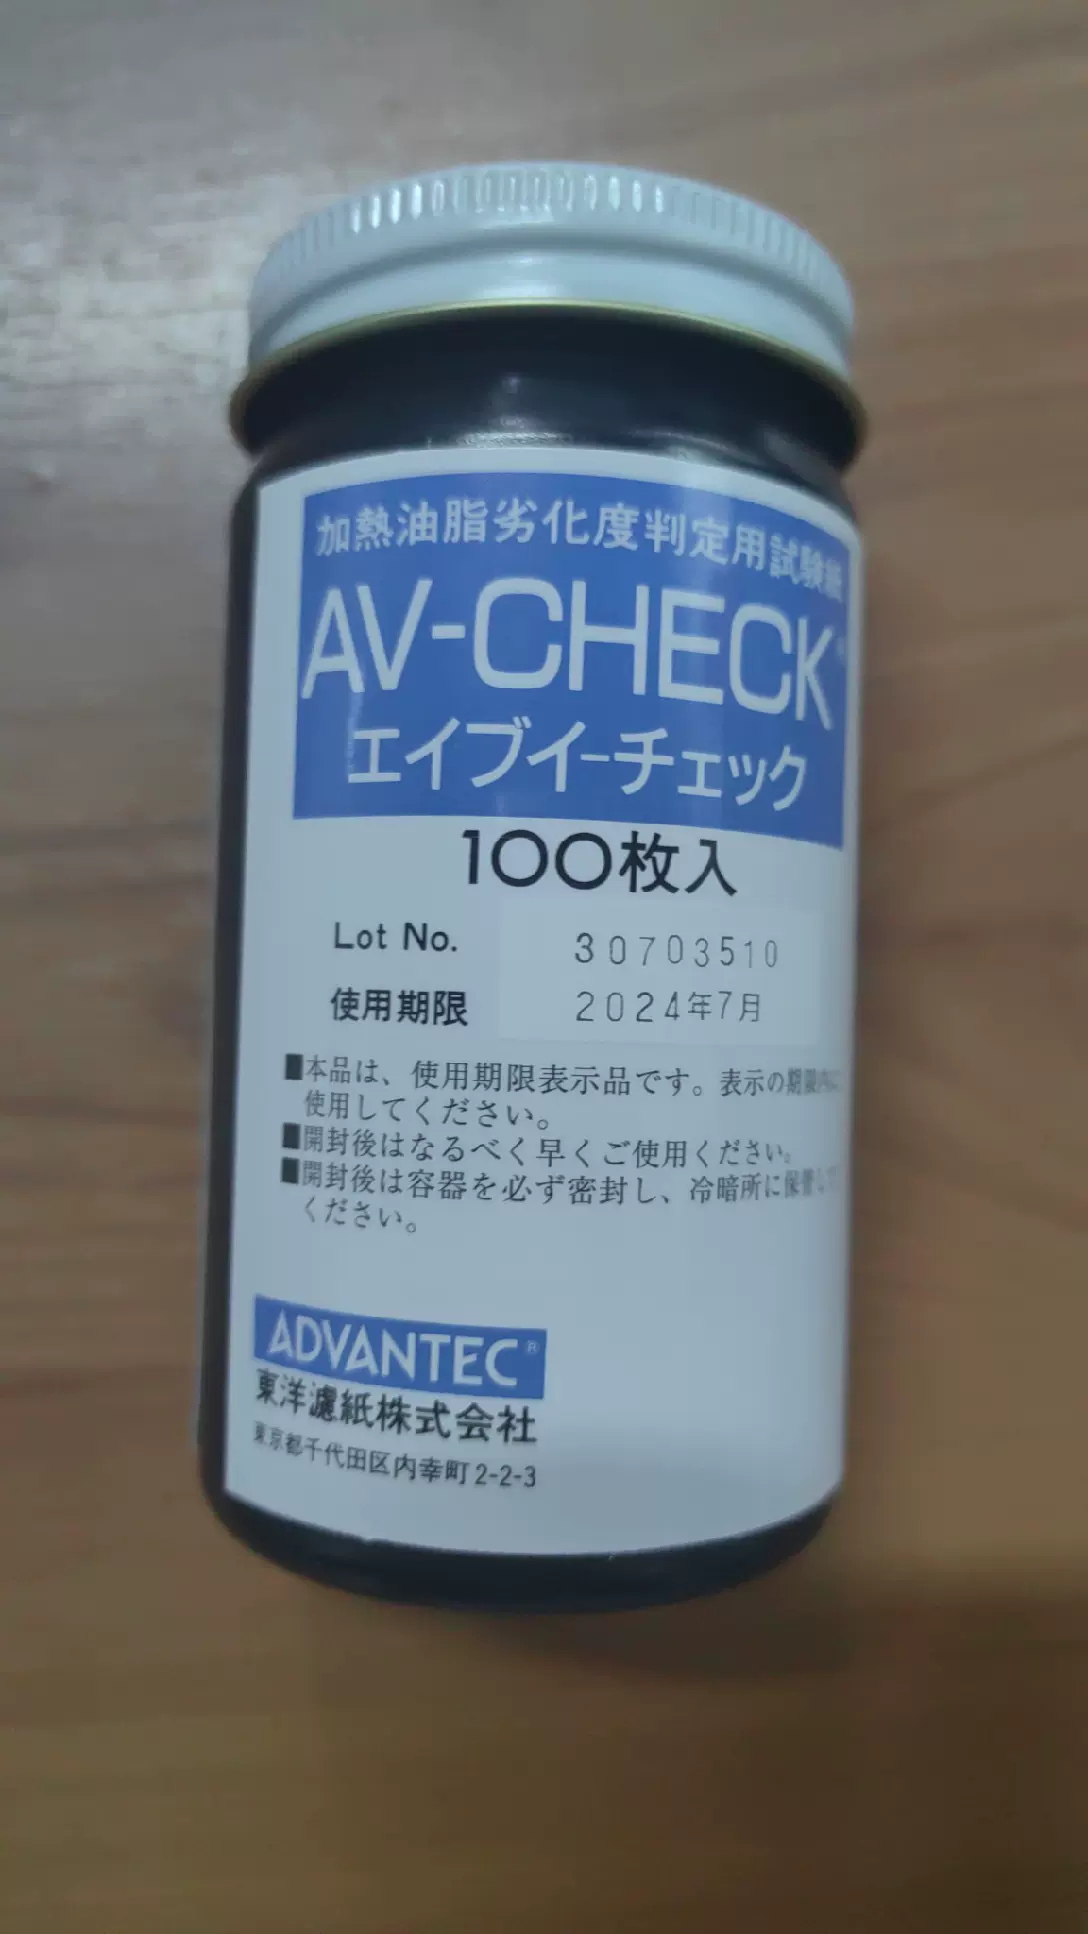 アドバンテック東洋 油脂劣化度判定試験紙 AV-CHECK(100枚入)